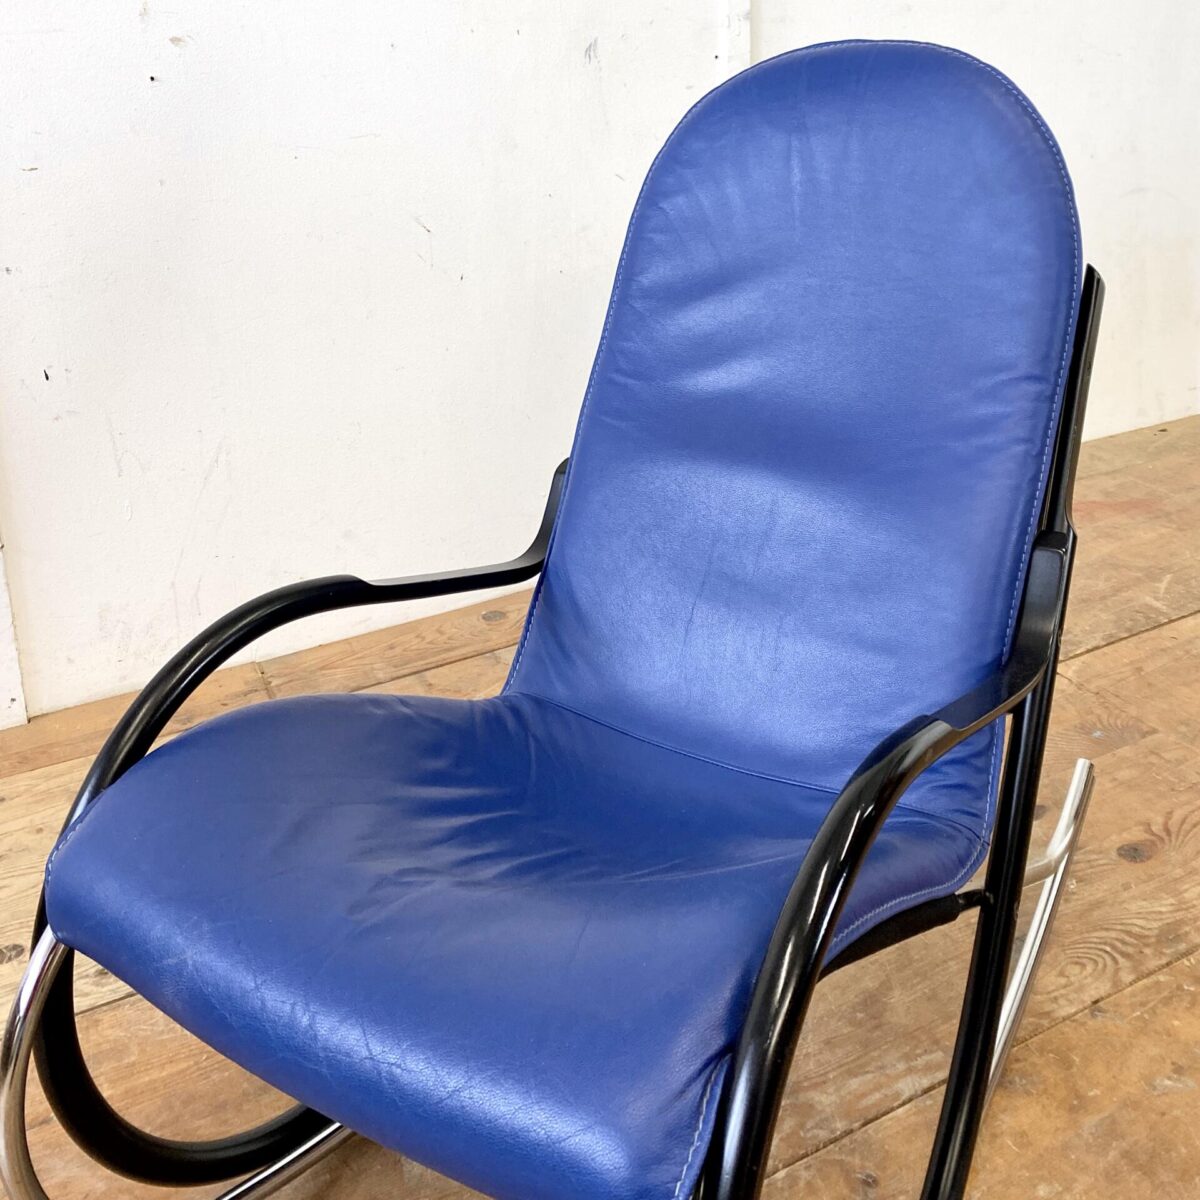 Deuxieme.shop midcentury Rocking Chair. Schweizer Schaukelstuhl von Paul Tuttle für Strässle 70er Jahre. Material blaues Leder, Buchenholz schwarz lackiert, und Metall verchromt. Ein paar altersbedingte Gebrauchsspuren, der Lack auf den Armlehnen hat ein paar kleinere Schrammen. Technisch in einwandfreiem Stabilen Zustand. Sitzhöhe 42cm, Breite 56cm, Tiefe 98cm, Gesamthöhe 94cm.